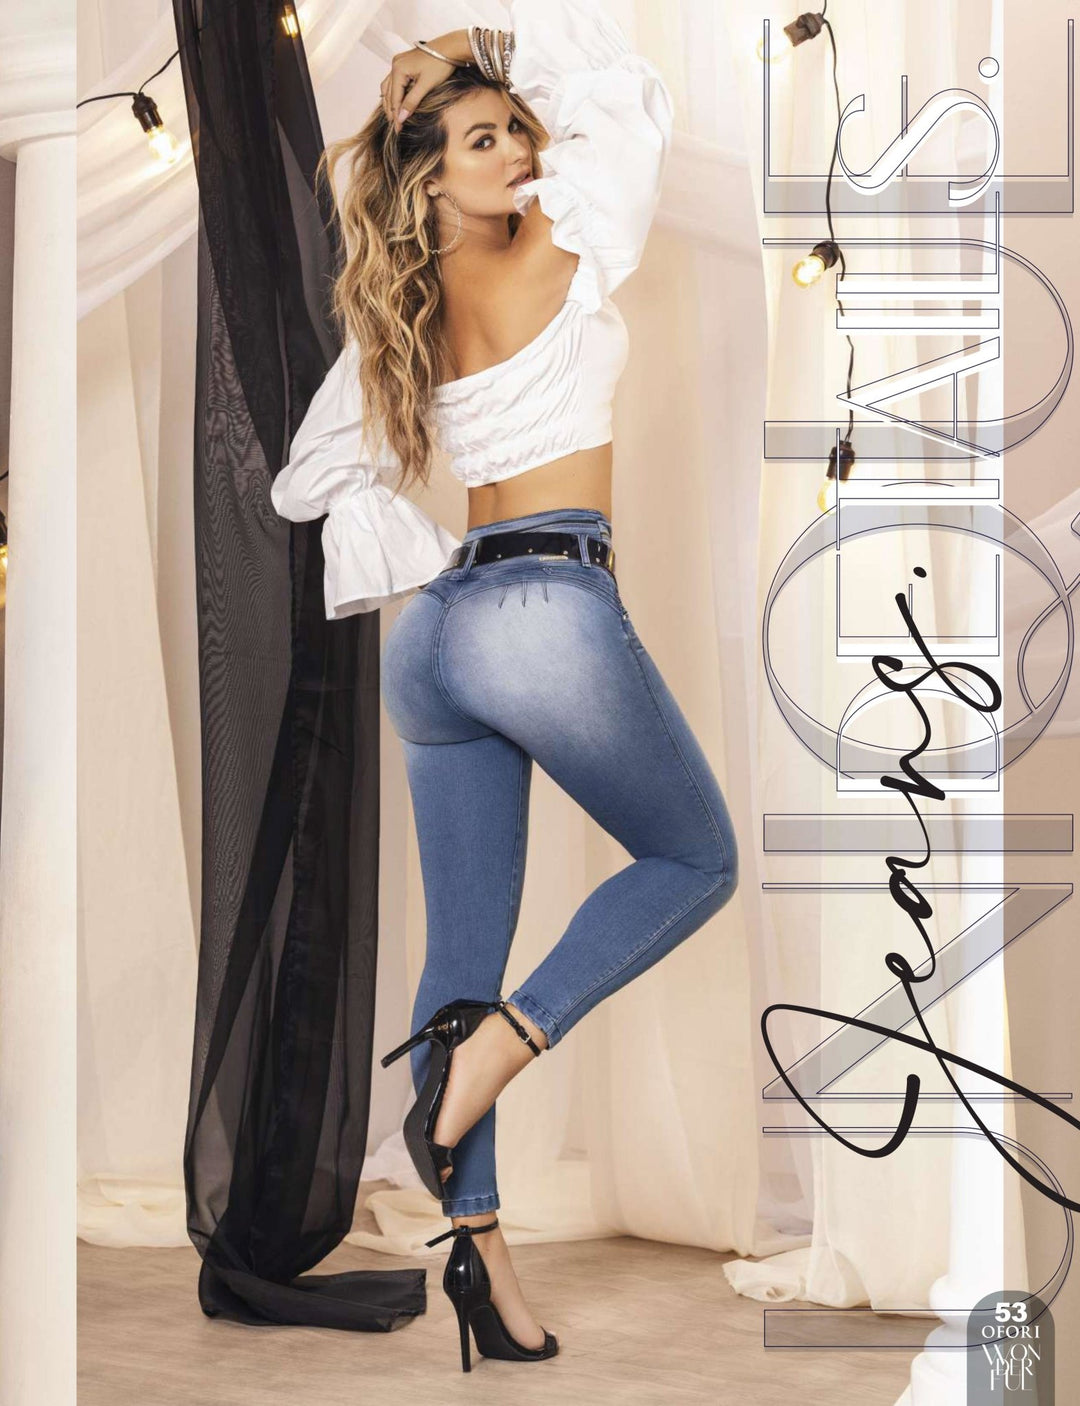 Serrat 100% Authentic Colombian Push Up Jeans – JDColFashion